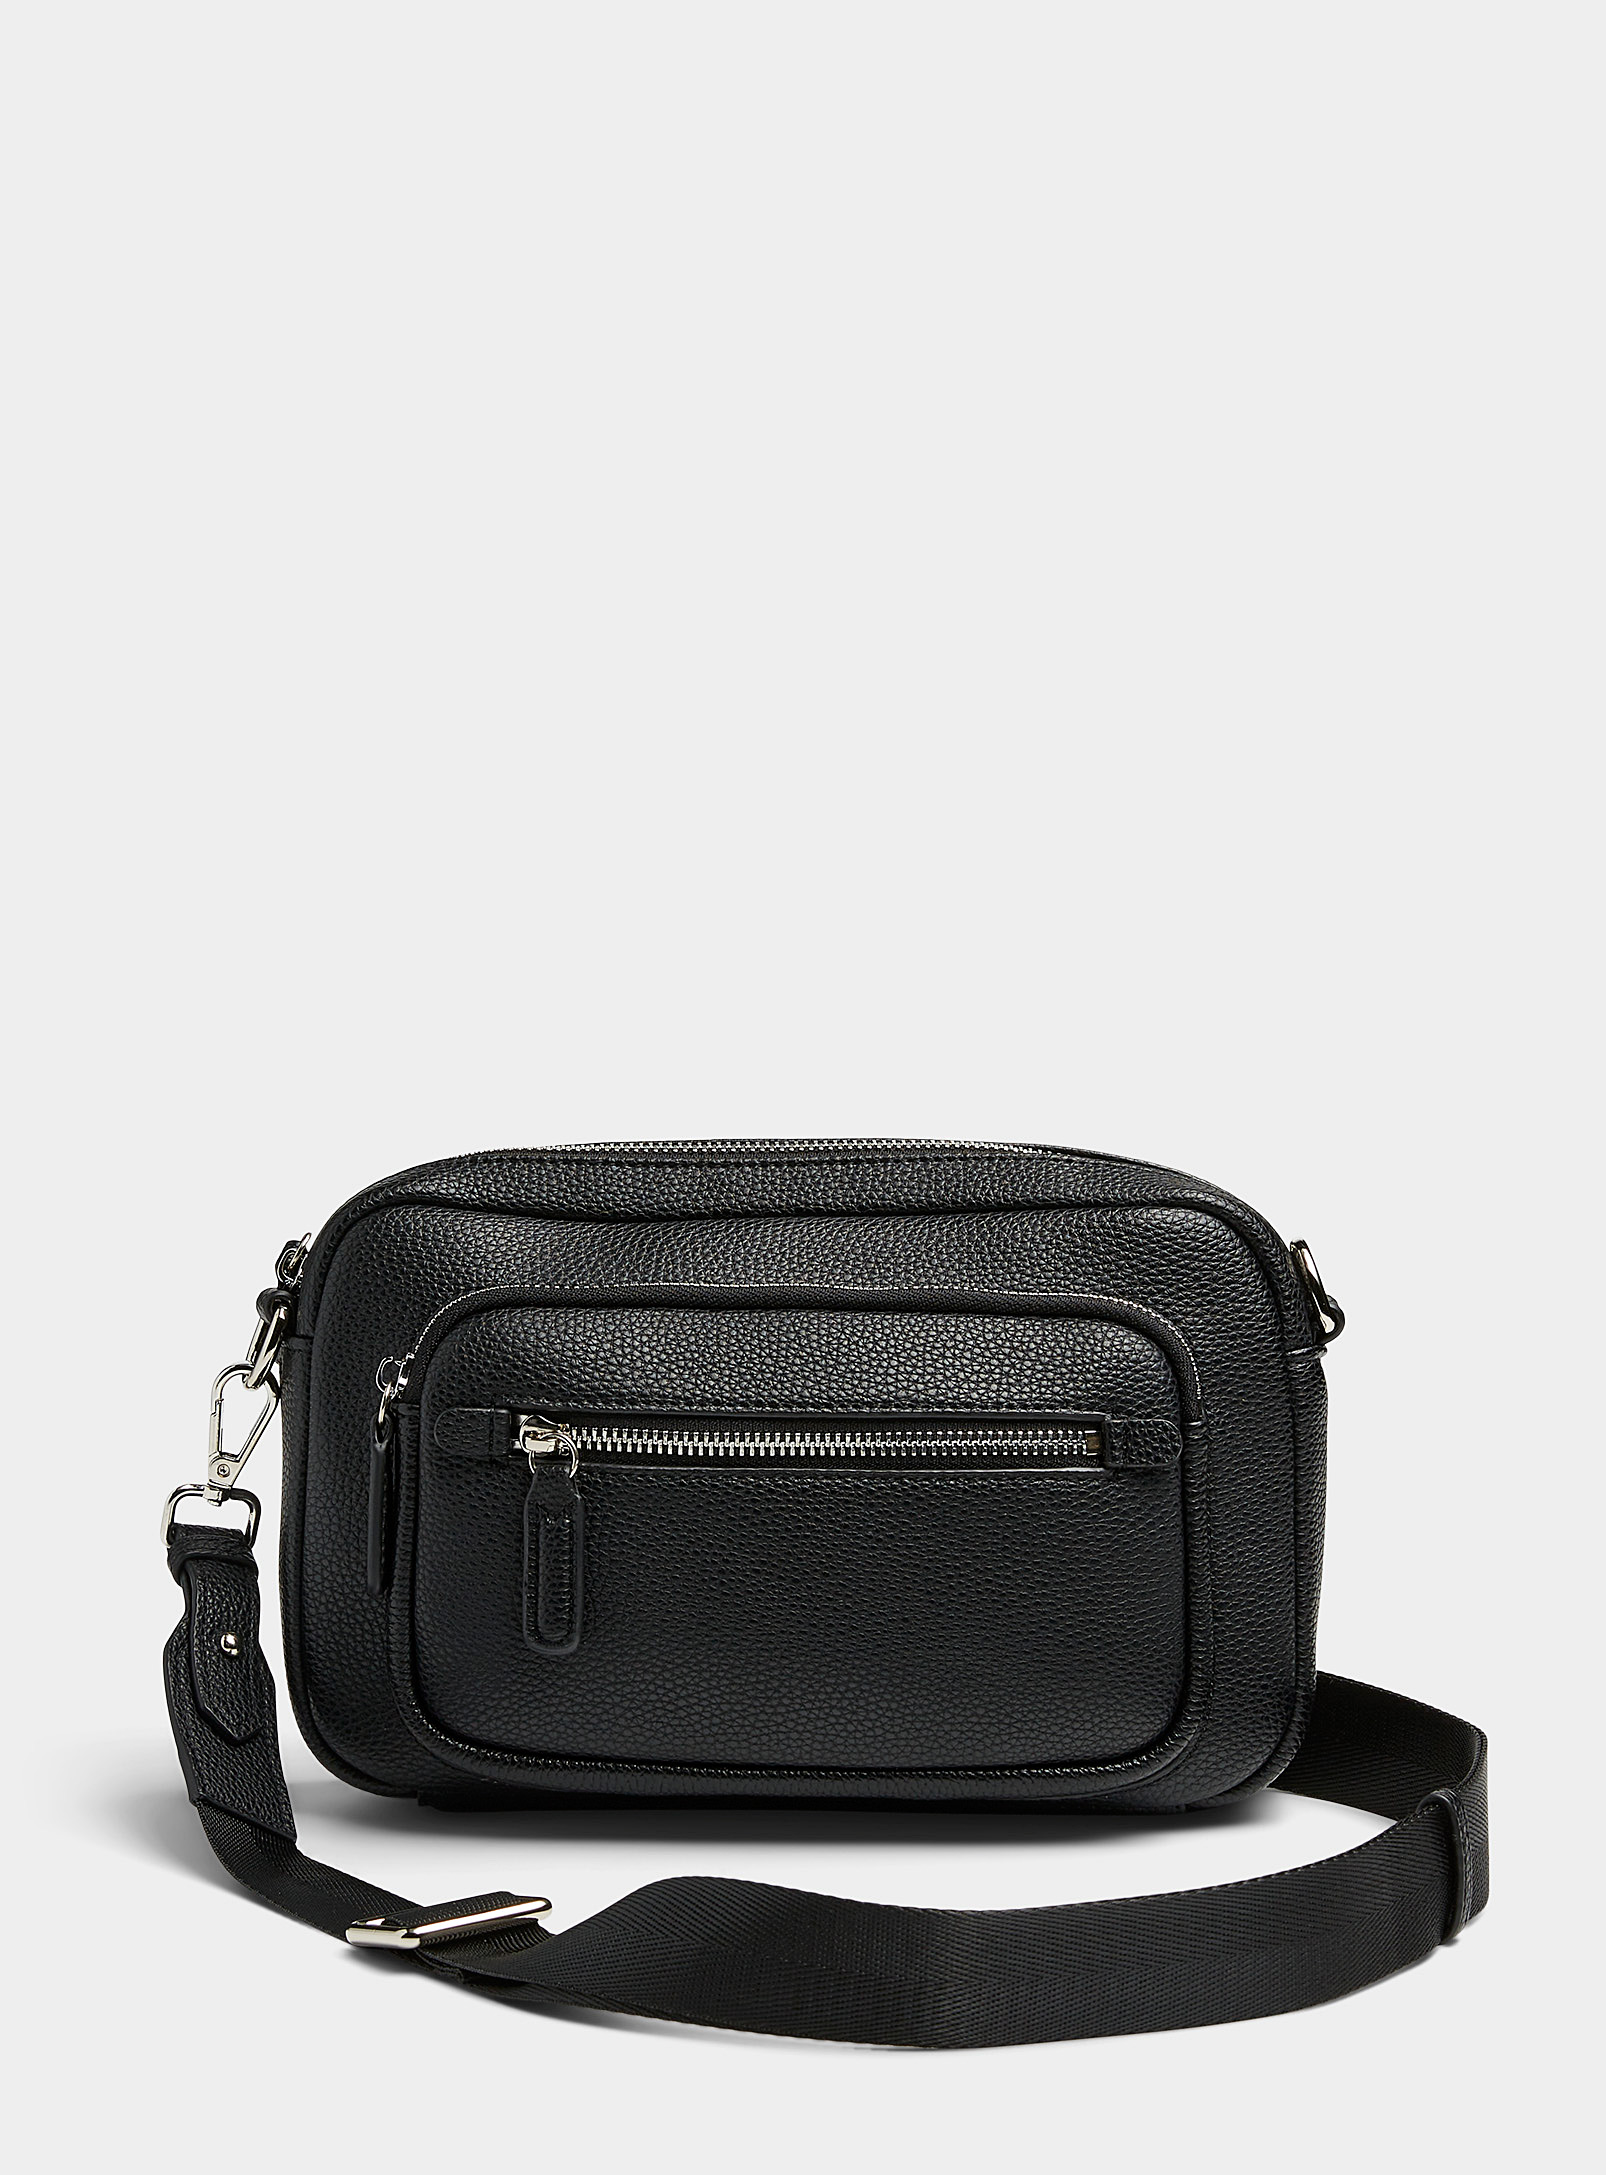 Le 31 Grained Leather Shoulder Bag In Black